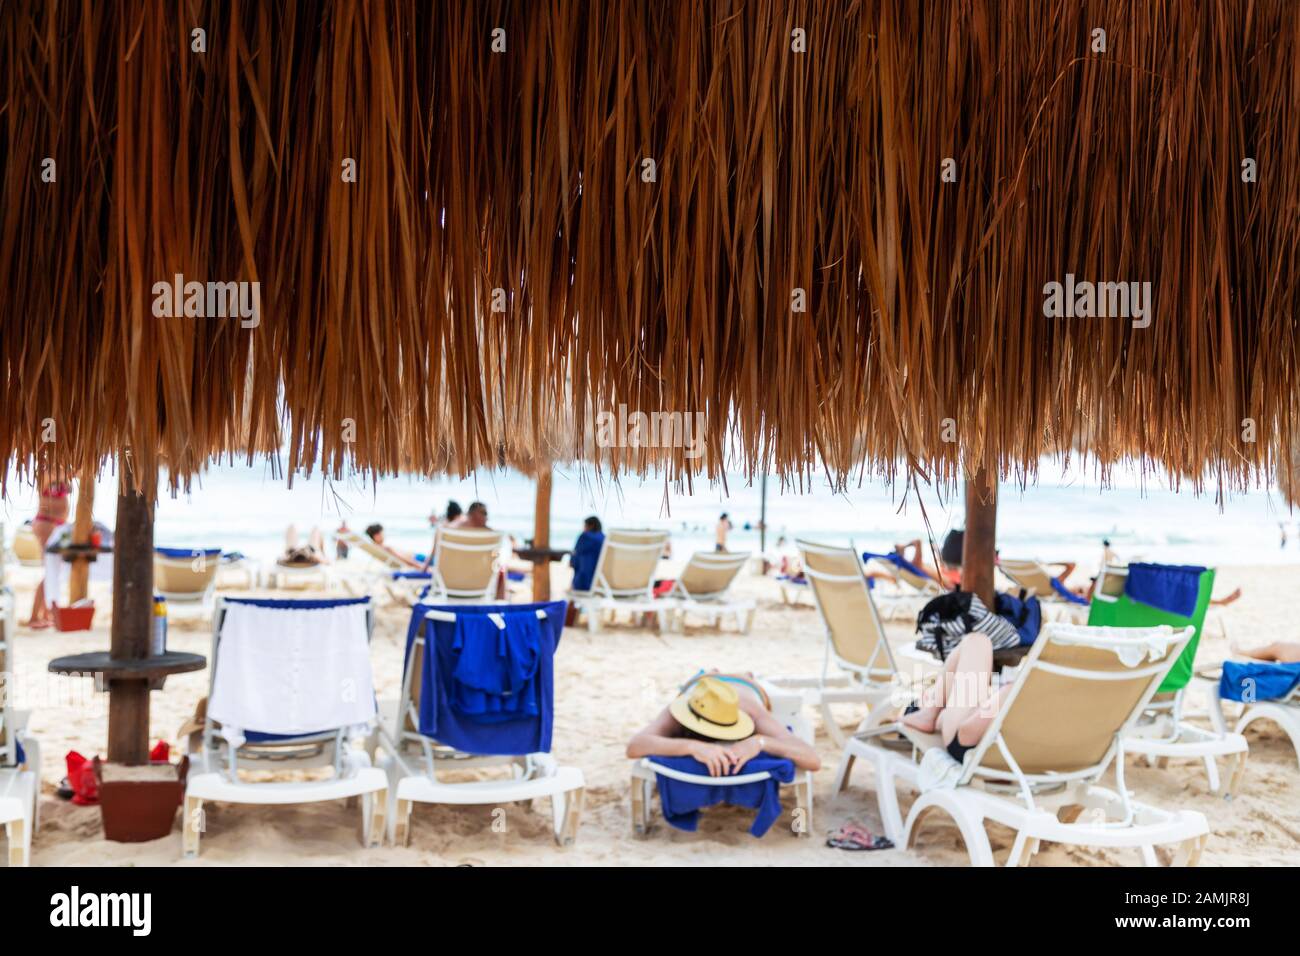 Près de Coconer de plage de feuilles de palmier à la noix de coco avec des amateurs de plage se relaxant à une distance dans une plage de Cancun au Mexique. Banque D'Images